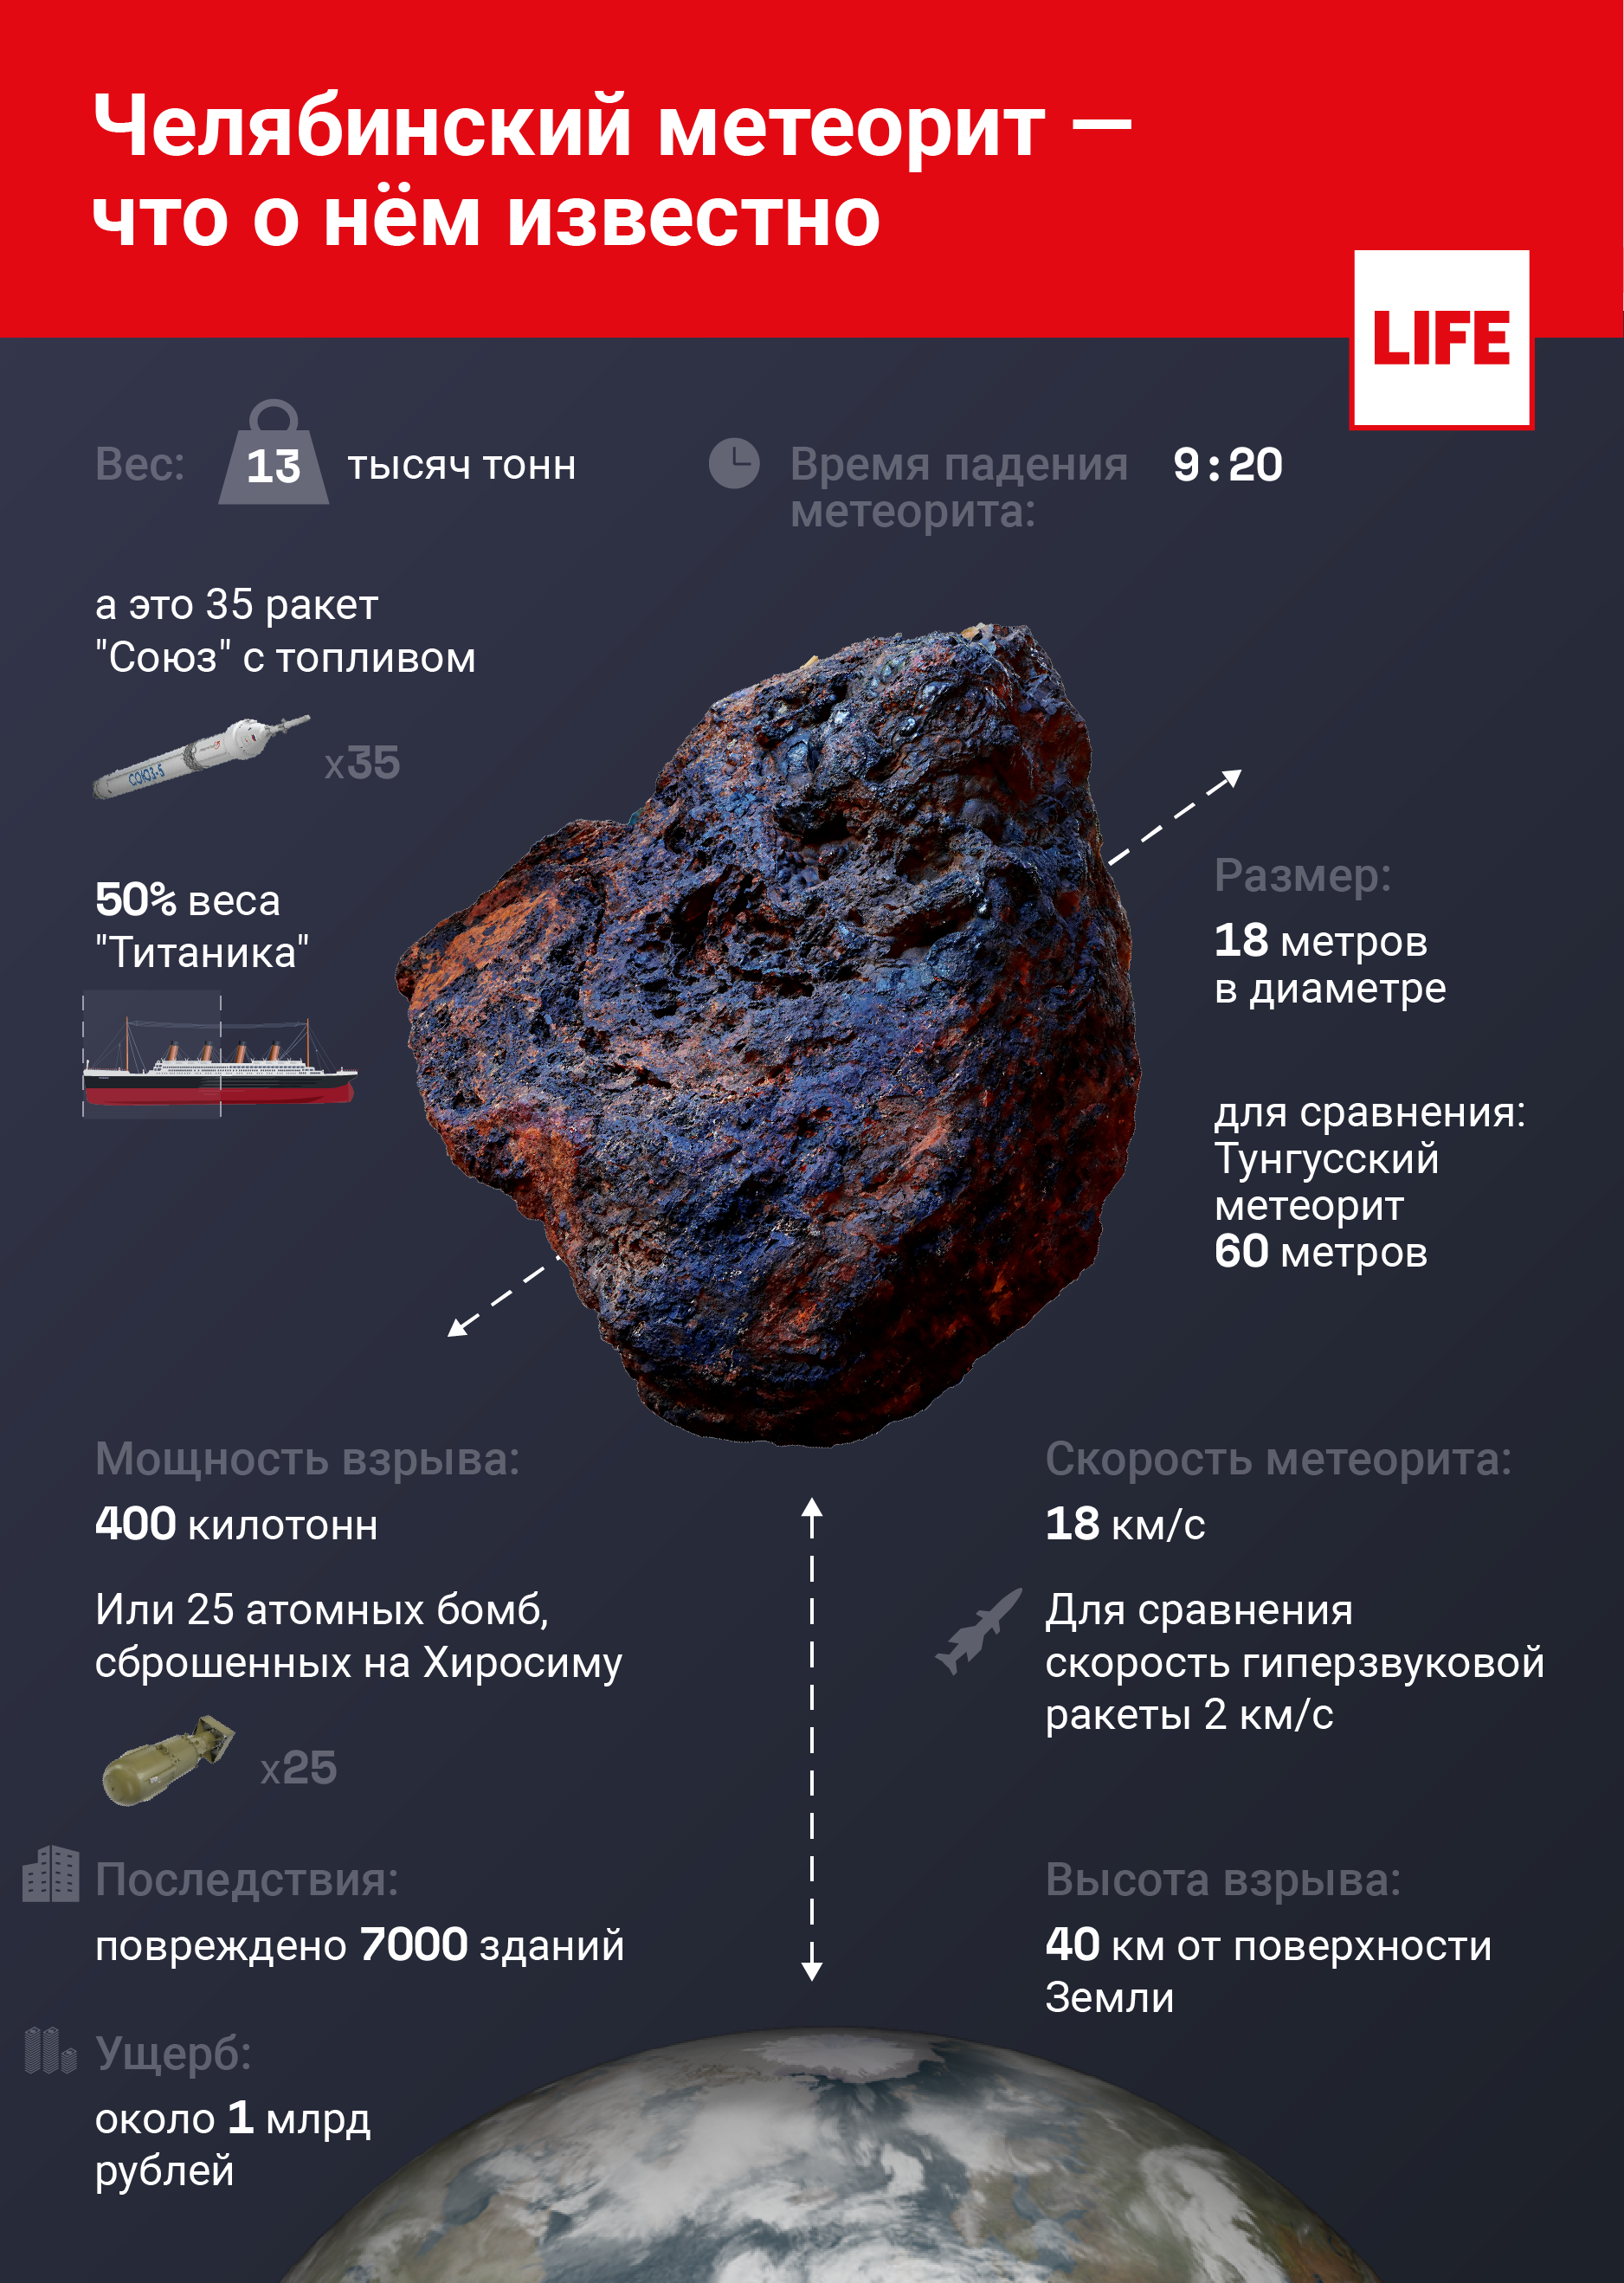 Челябинский метеорит — что о нём известно. Инфографика © LIFE